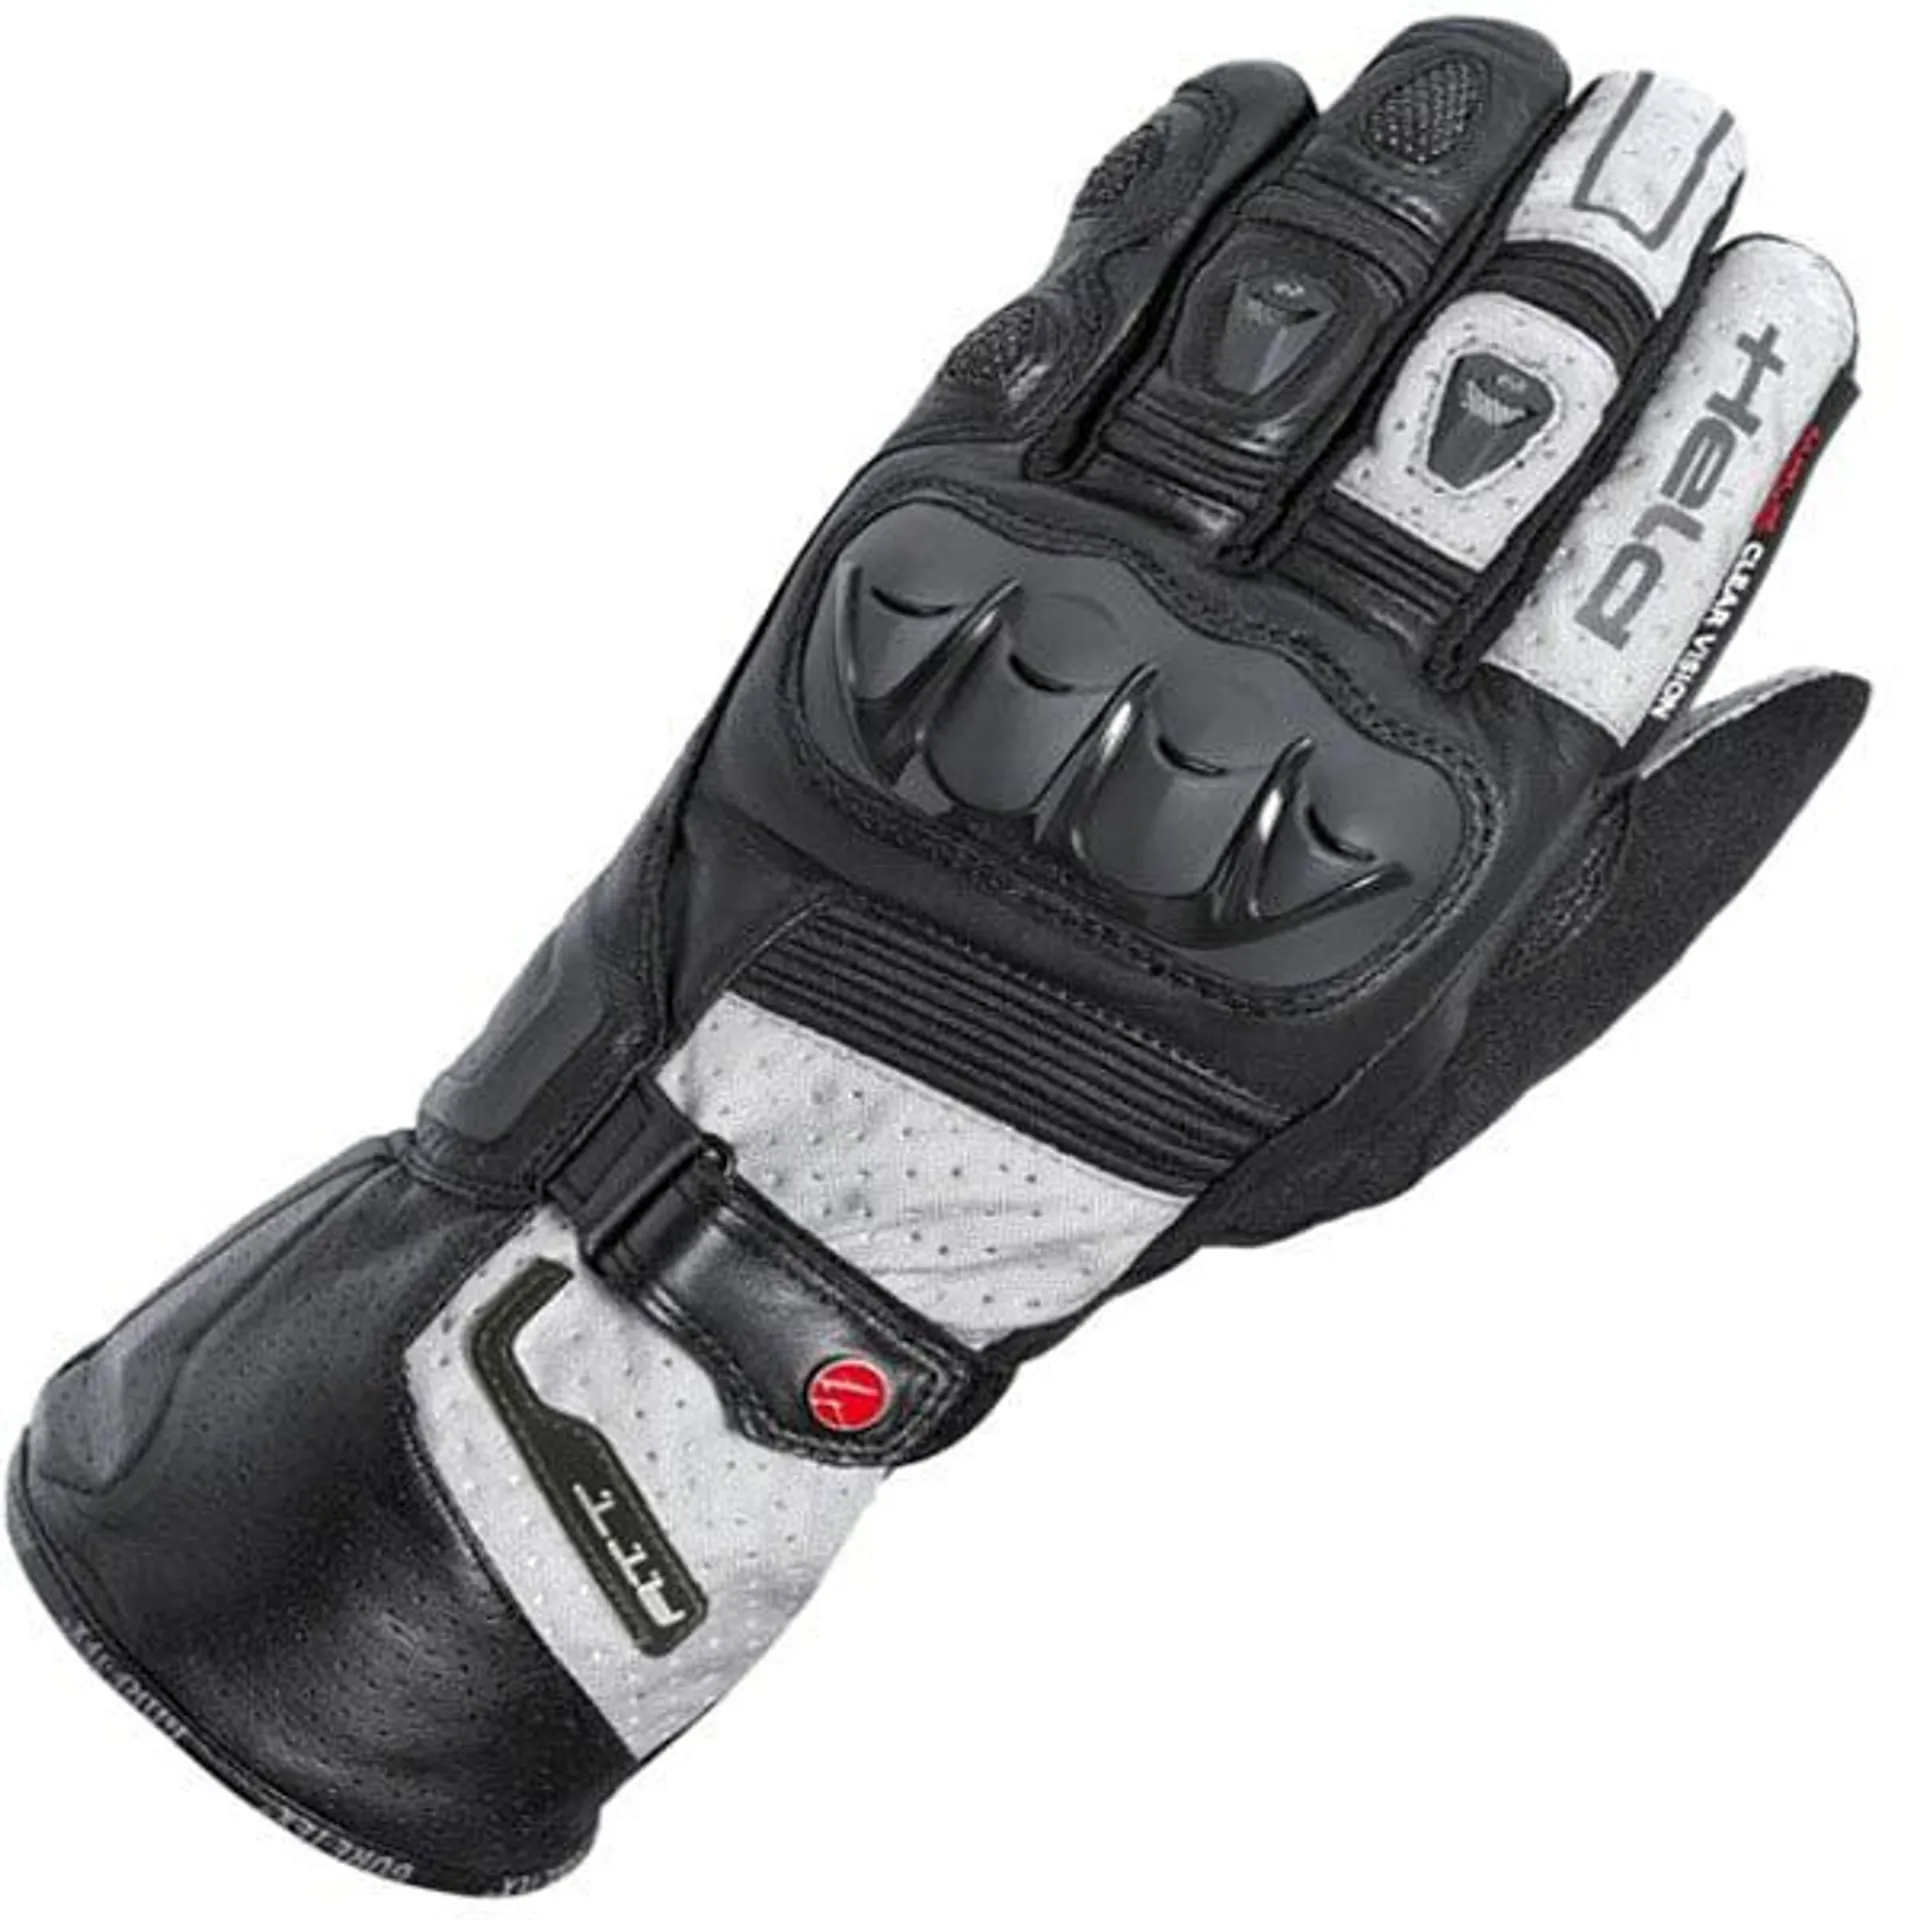 Held Air N Dry Gore-Tex Glove - Black / Grey